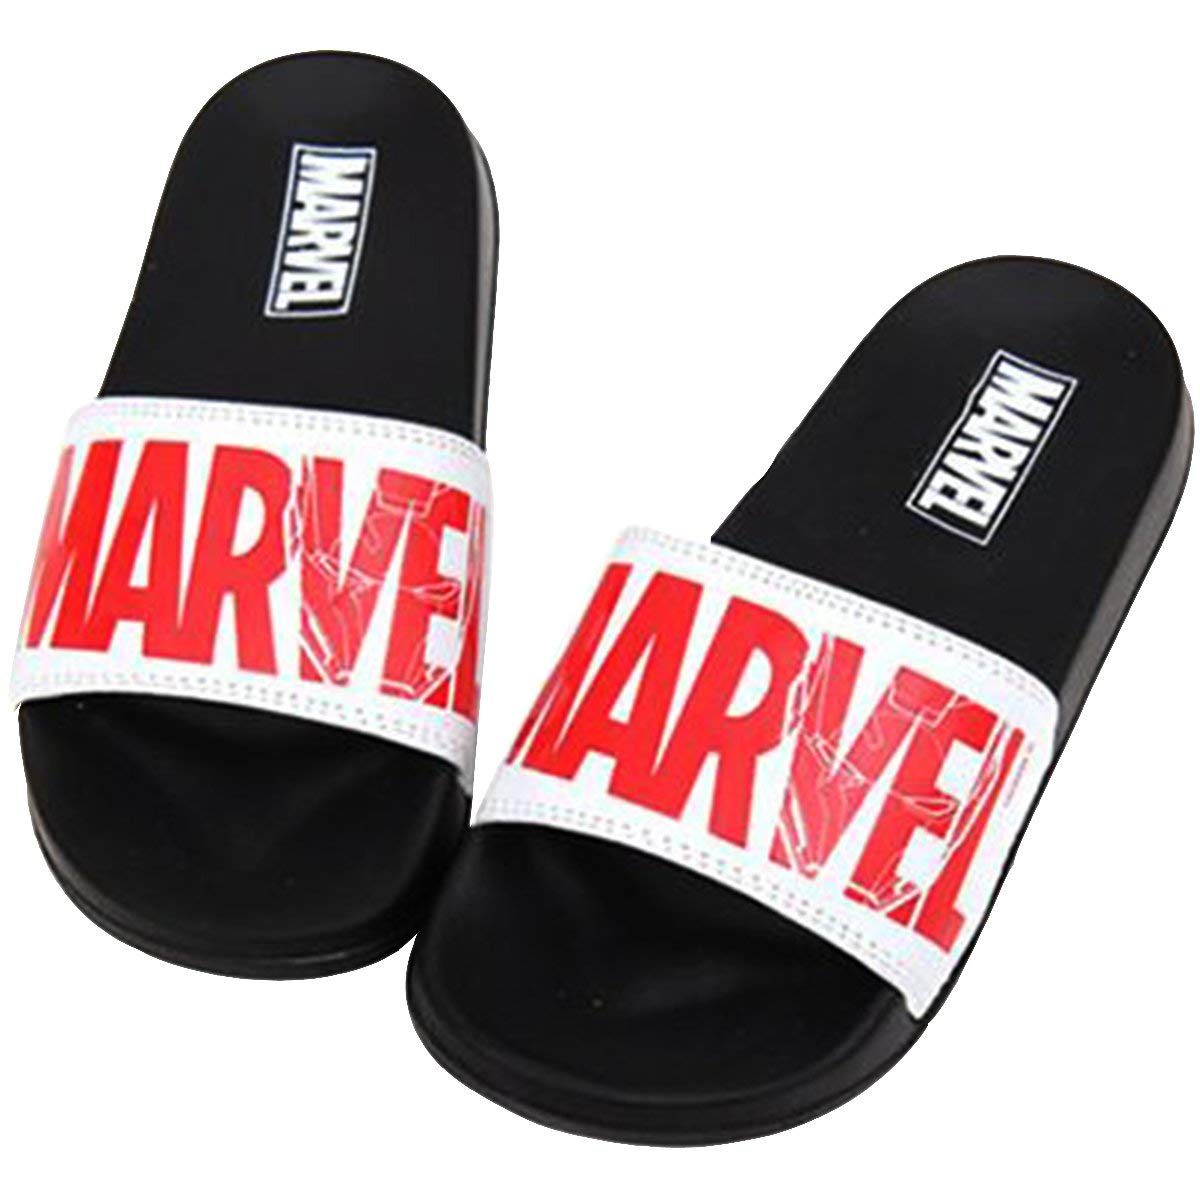 marvel slippers for men